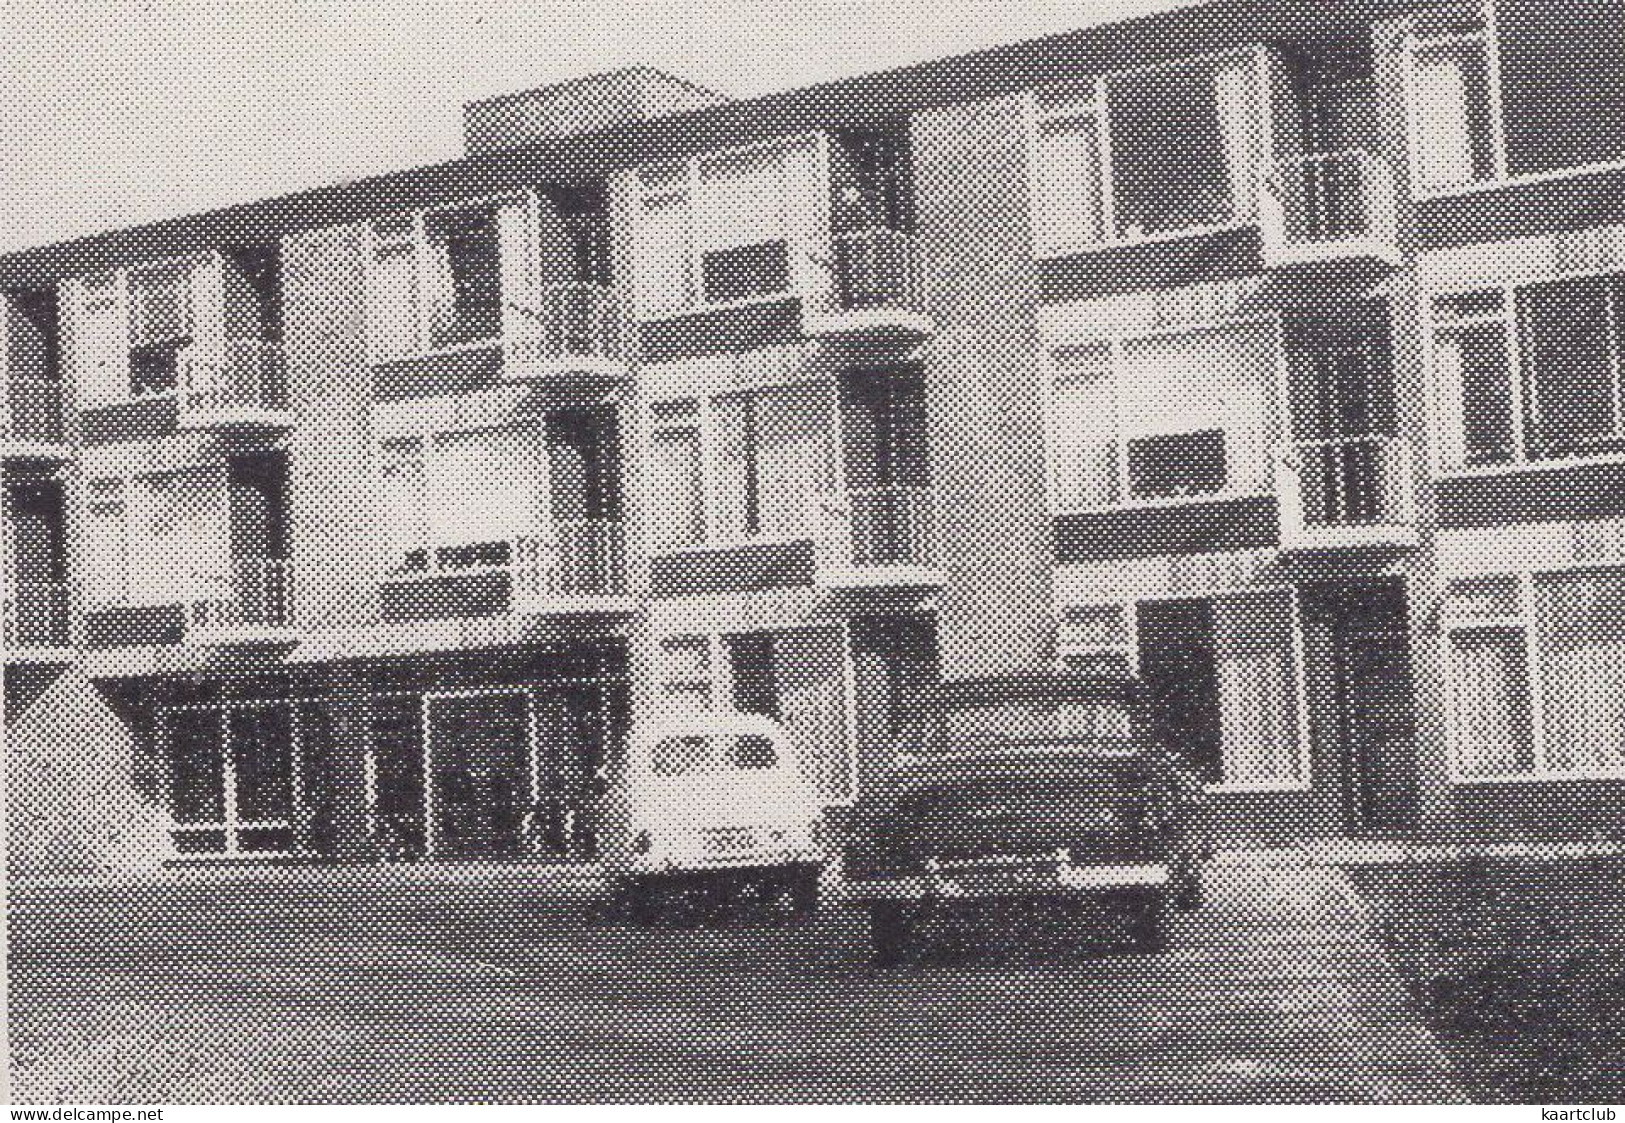 Braamhagen - Soestdijk - (Utrecht, Nederland/Holland) - 1962 - CKZ 12 - Foto C. Van Es, Amersfoort - Buick '52 - Soestdijk